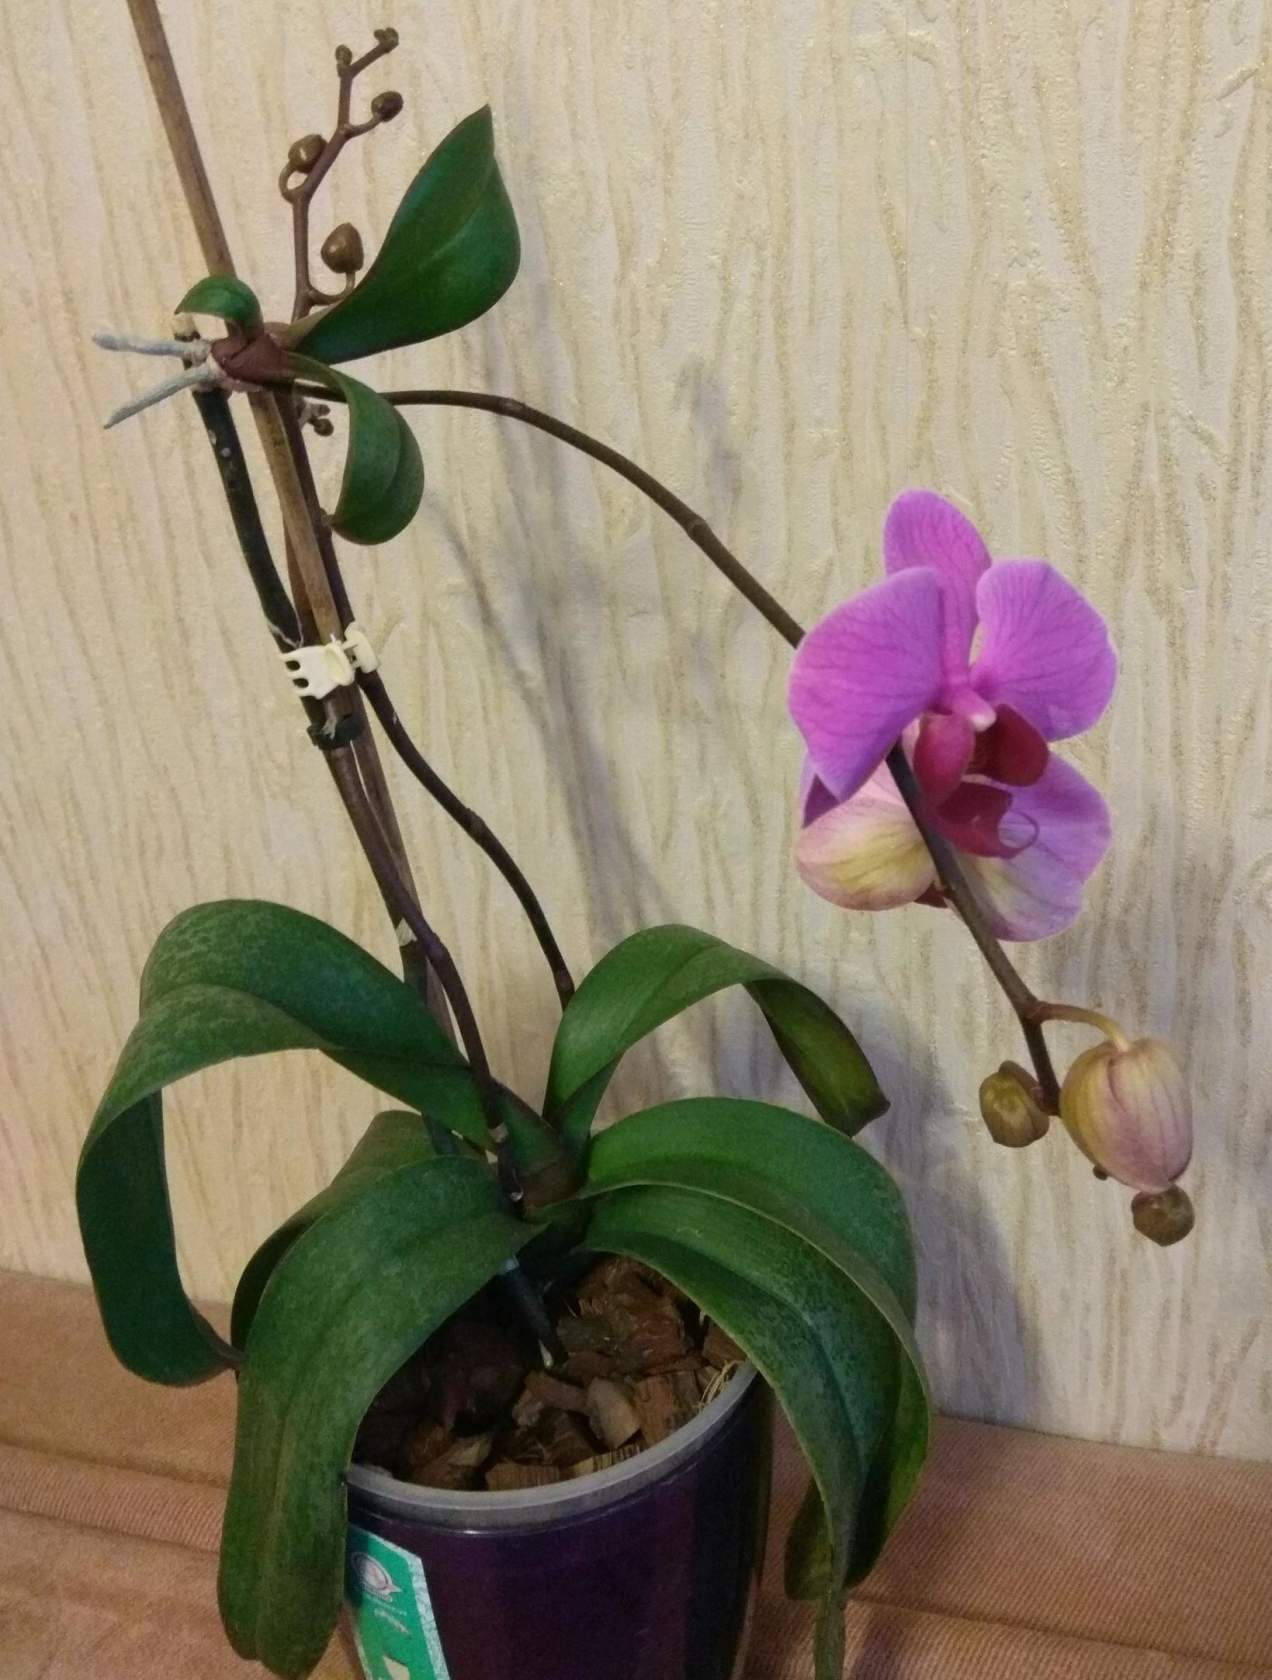 Детка орхидеи: фото, как выглядит и где появляется, как взять, почему не дает отросток, как растет на стебле, может ли пустить не на стволе, бывает ли по 3и штуки? русский фермер